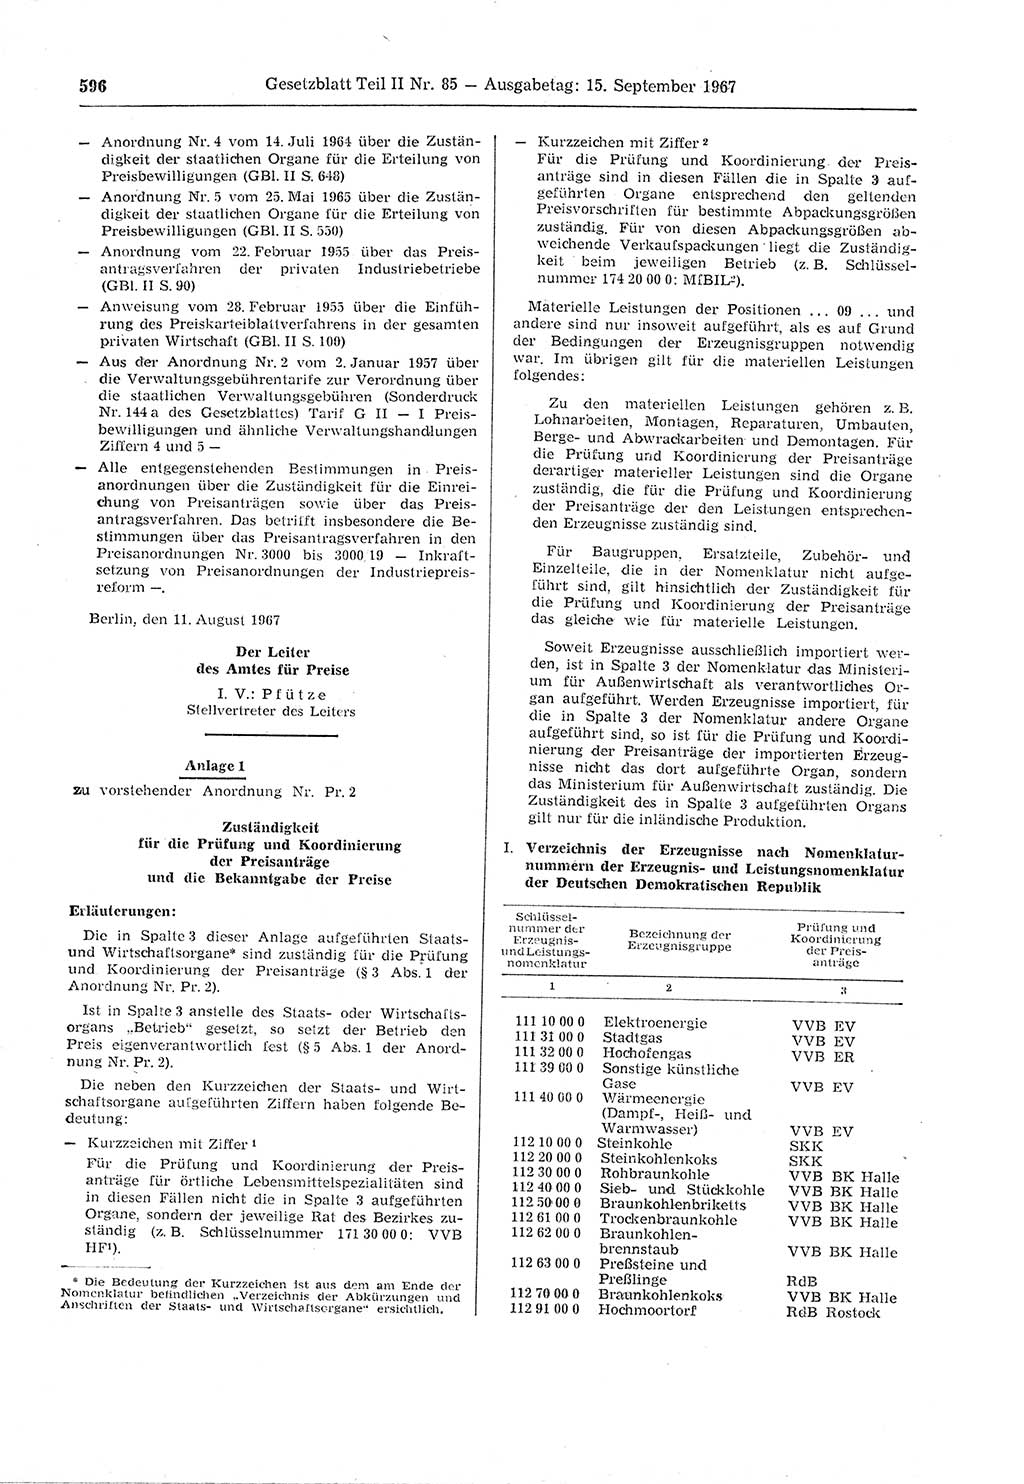 Gesetzblatt (GBl.) der Deutschen Demokratischen Republik (DDR) Teil ⅠⅠ 1967, Seite 596 (GBl. DDR ⅠⅠ 1967, S. 596)